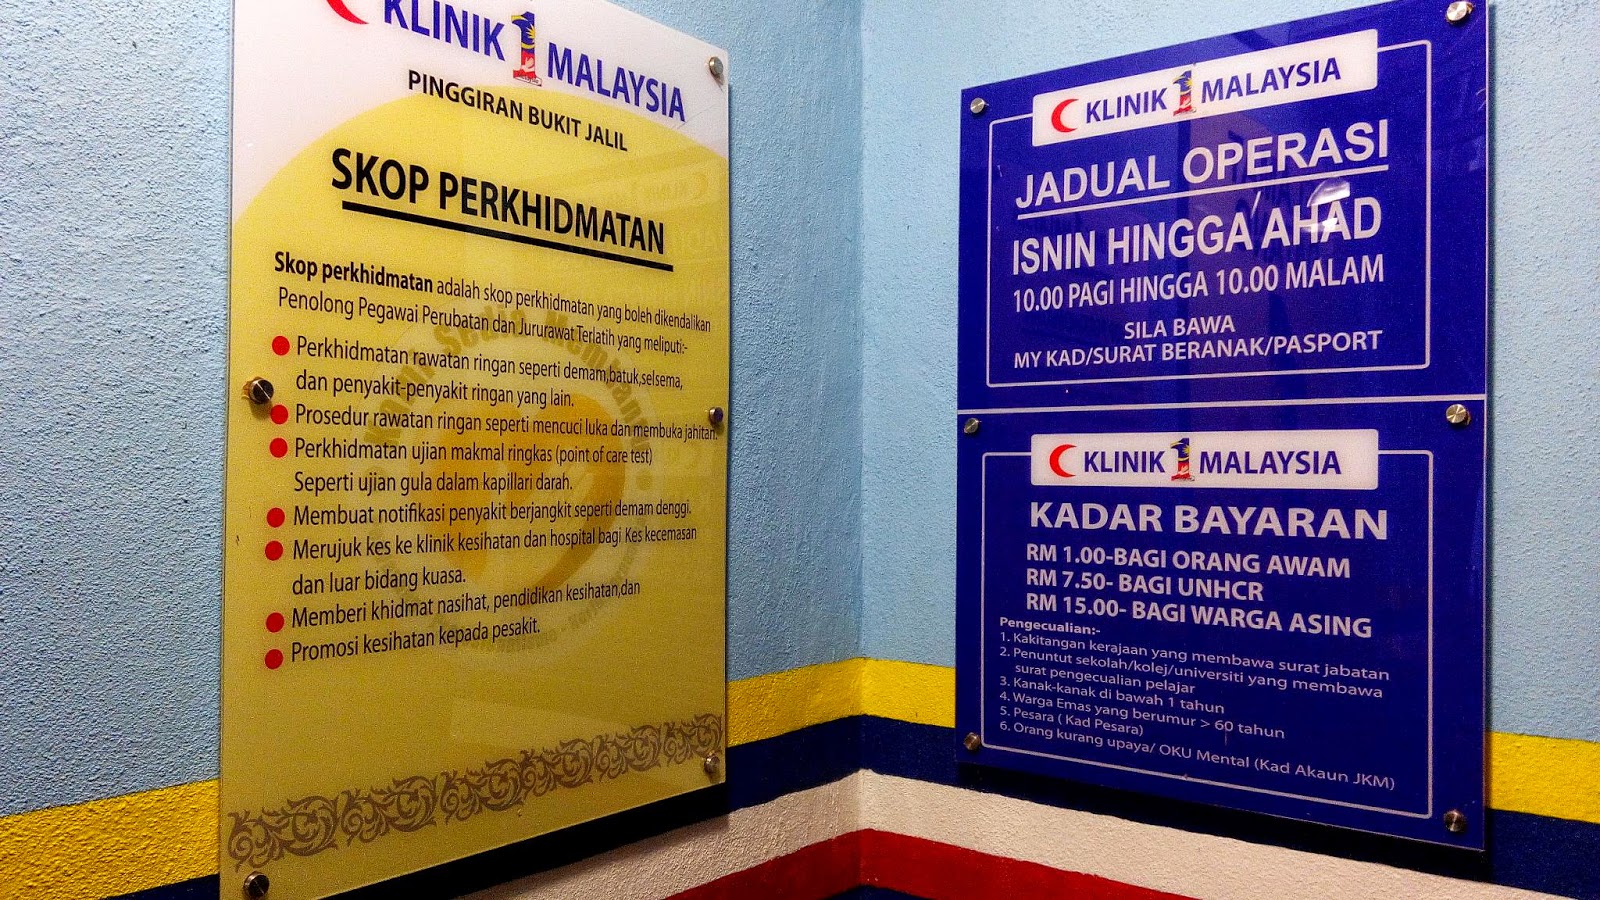 Klinik 1 Malaysia Menyediakan Perkhidmatan Perubatan 